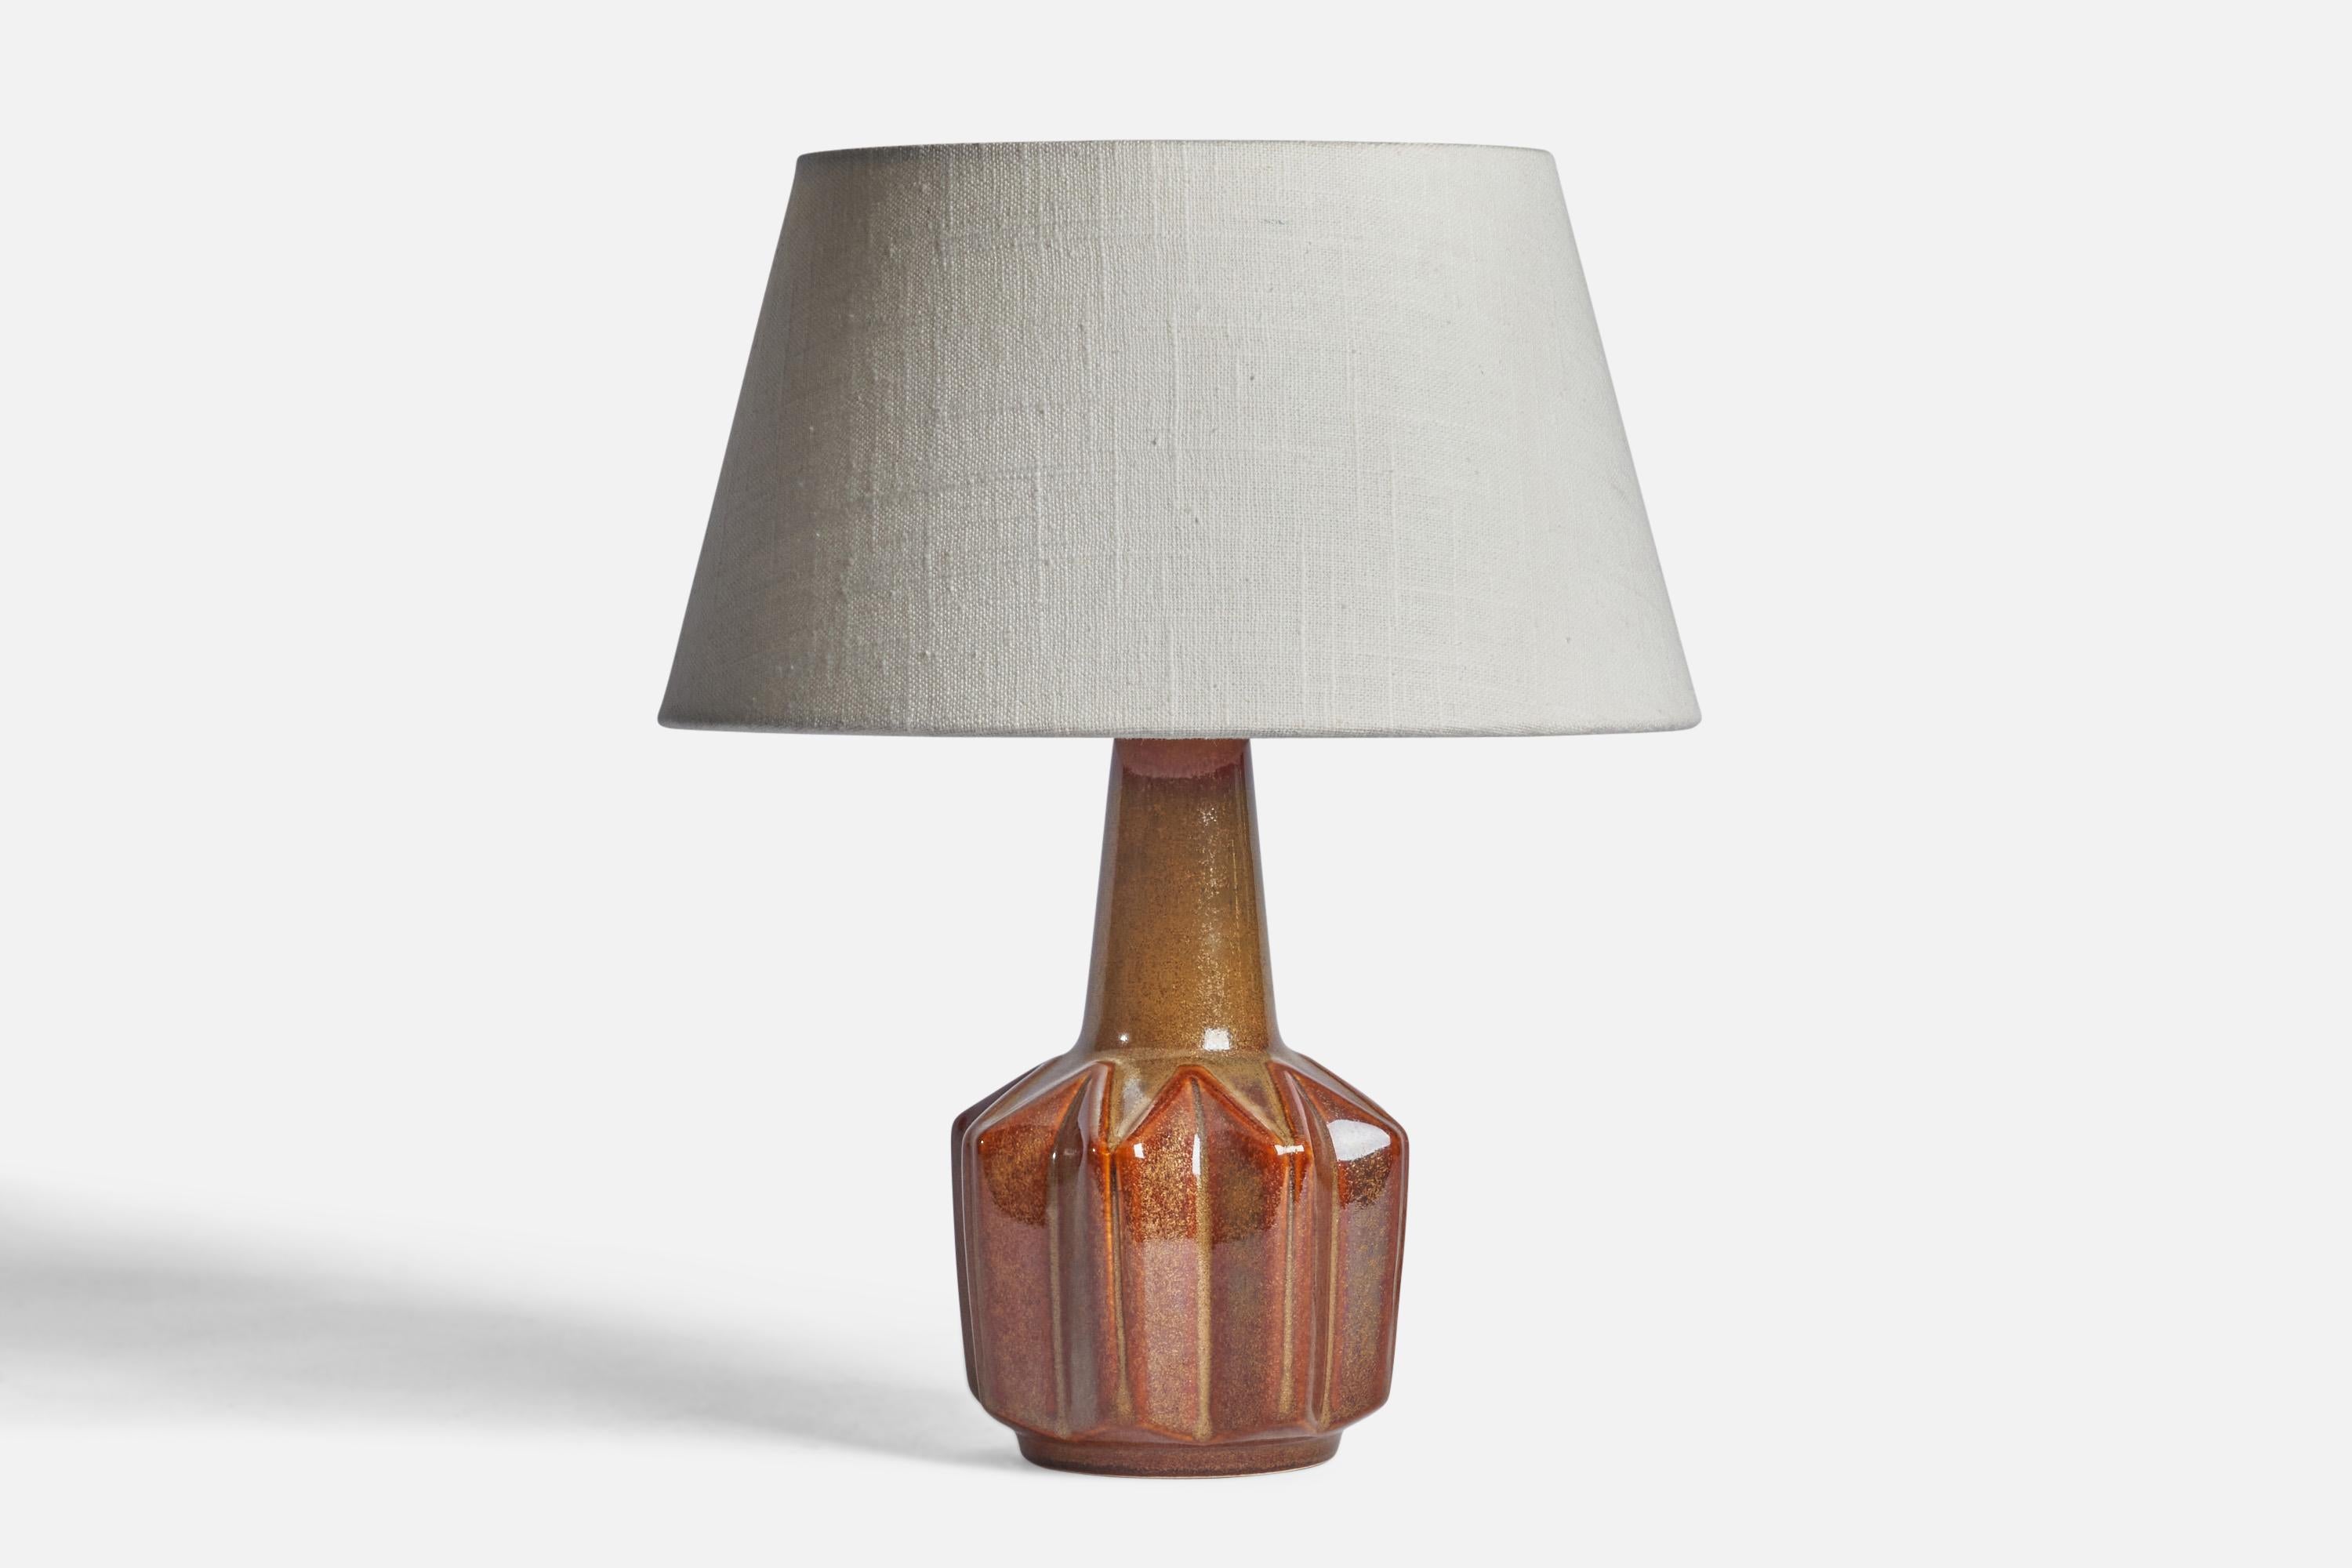 Tischlampe aus braun glasiertem Steingut, entworfen und hergestellt von Søholm, Bornholm, Dänemark, 1960er Jahre.

Abmessungen der Lampe (Zoll): 9,5